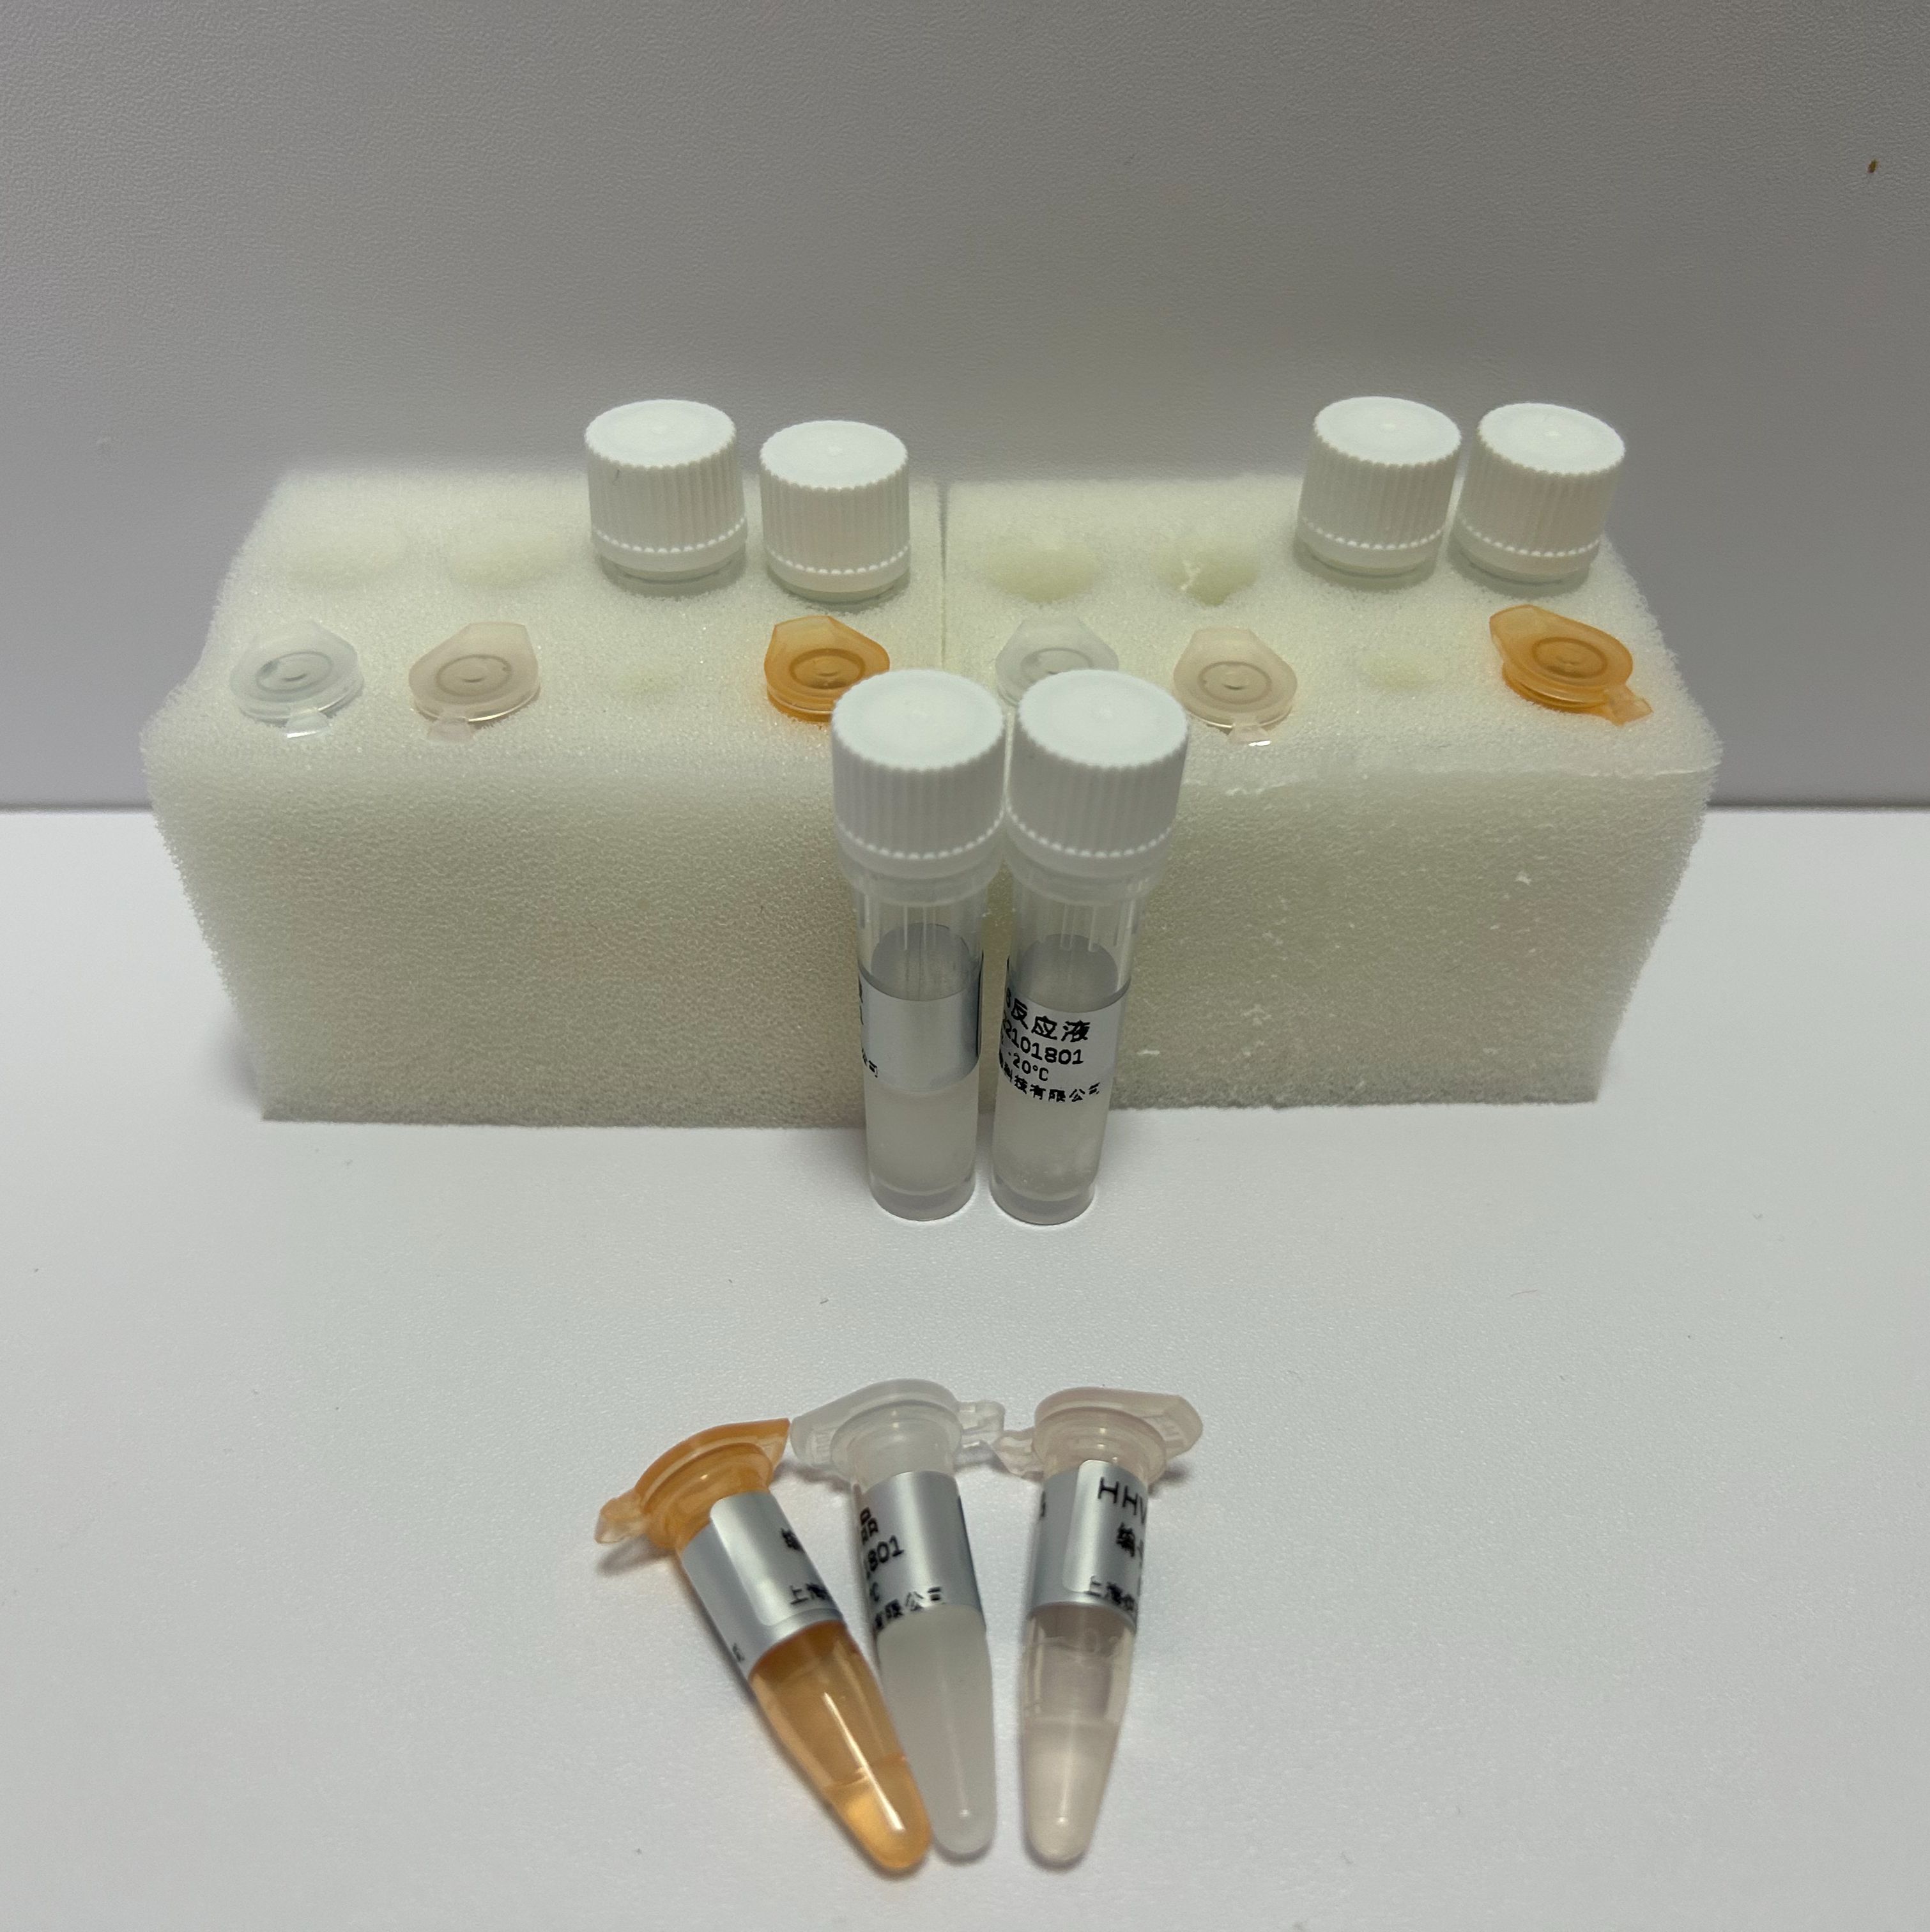 甲型流感（禽流感）病毒H10N8亚型RT-PCR试剂盒